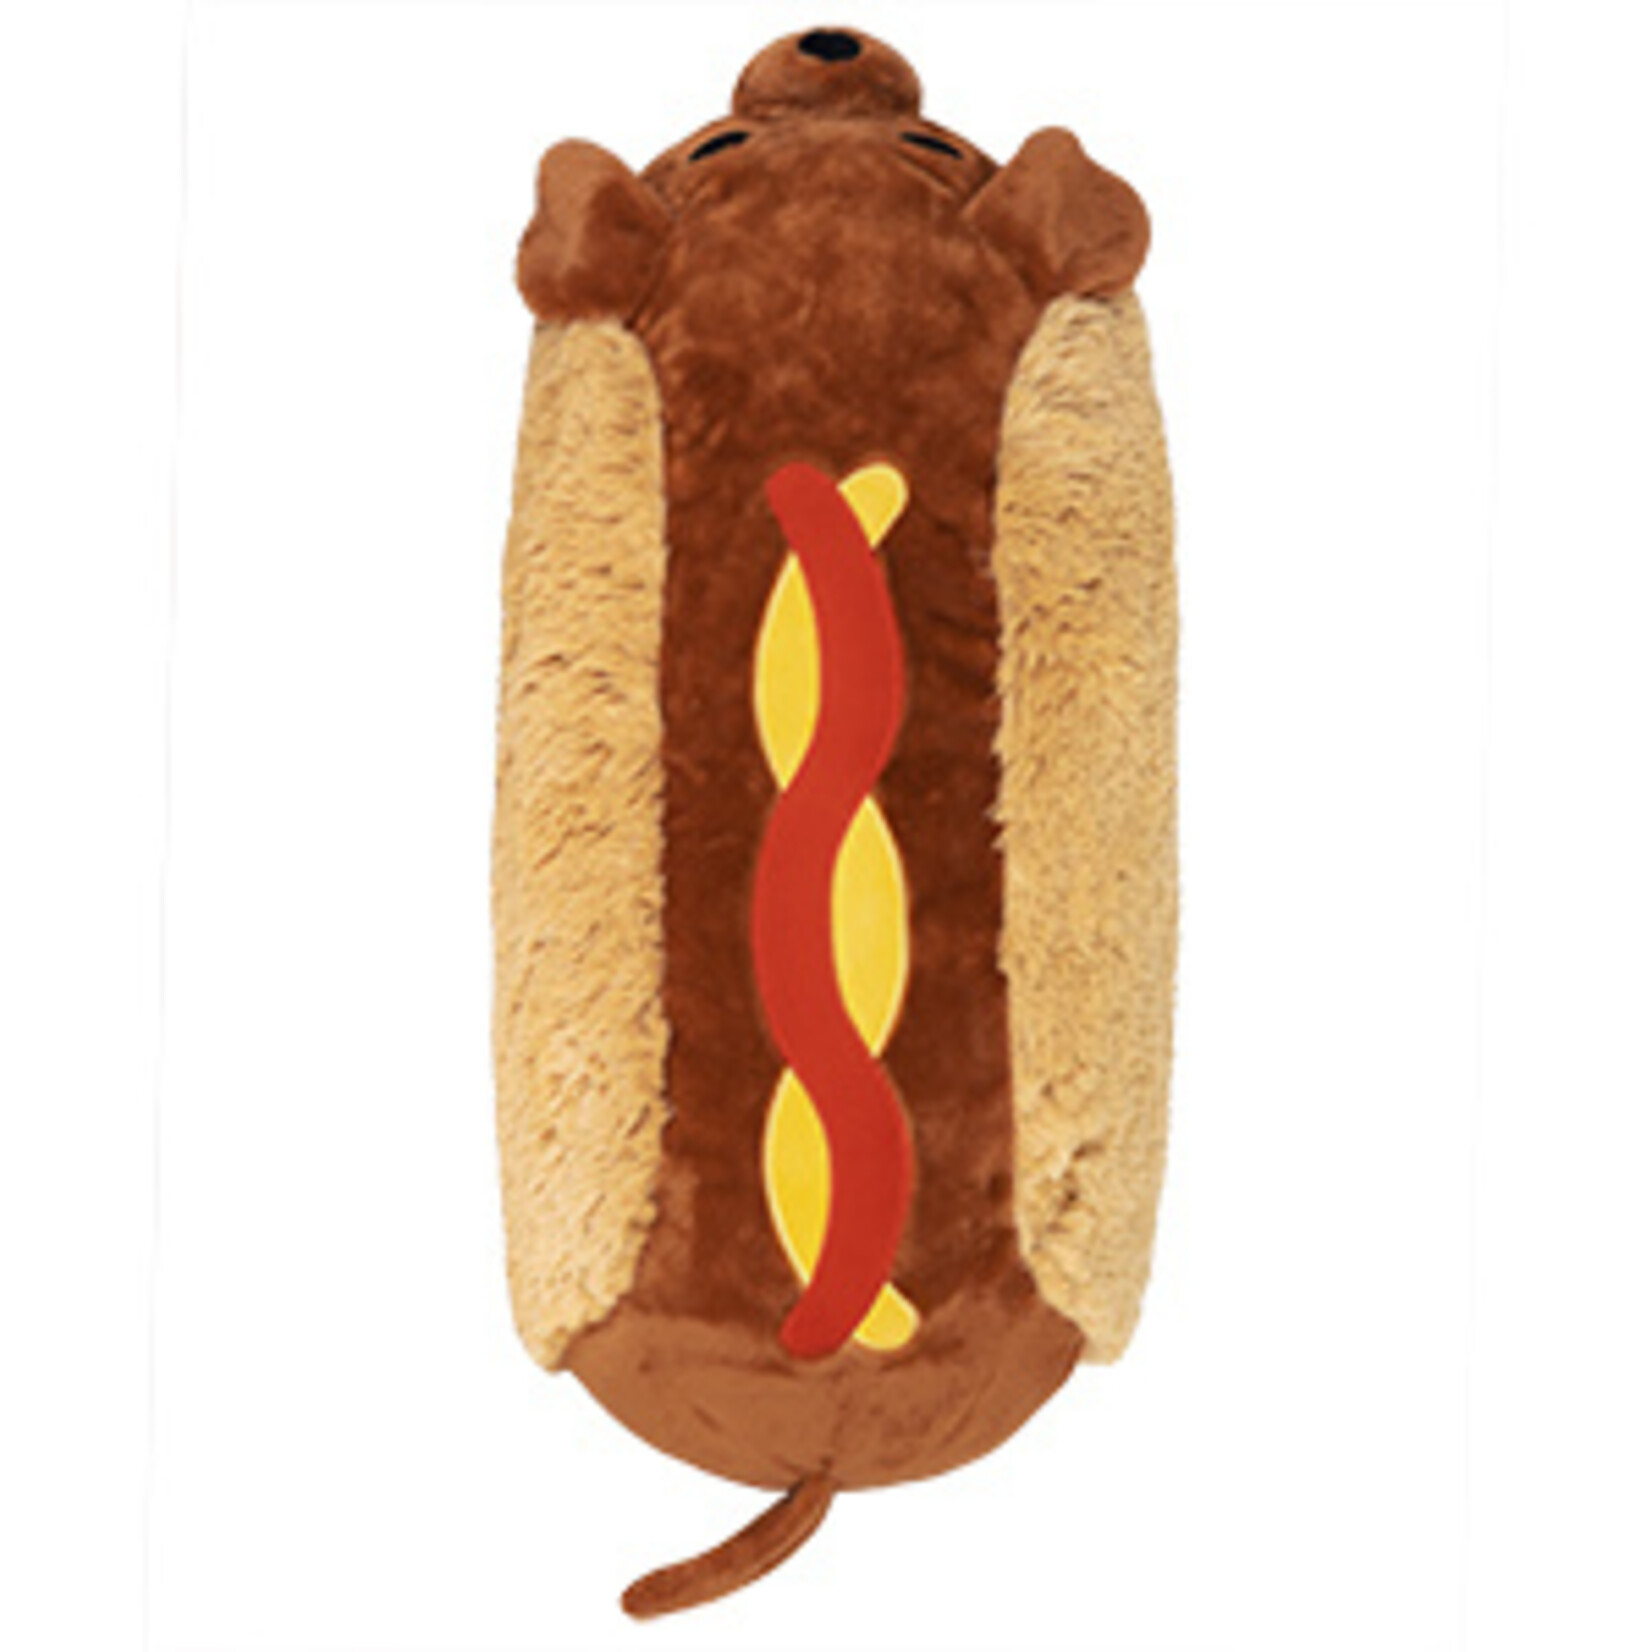 Squishable Sqishable Dachshund Hot Dog 15"